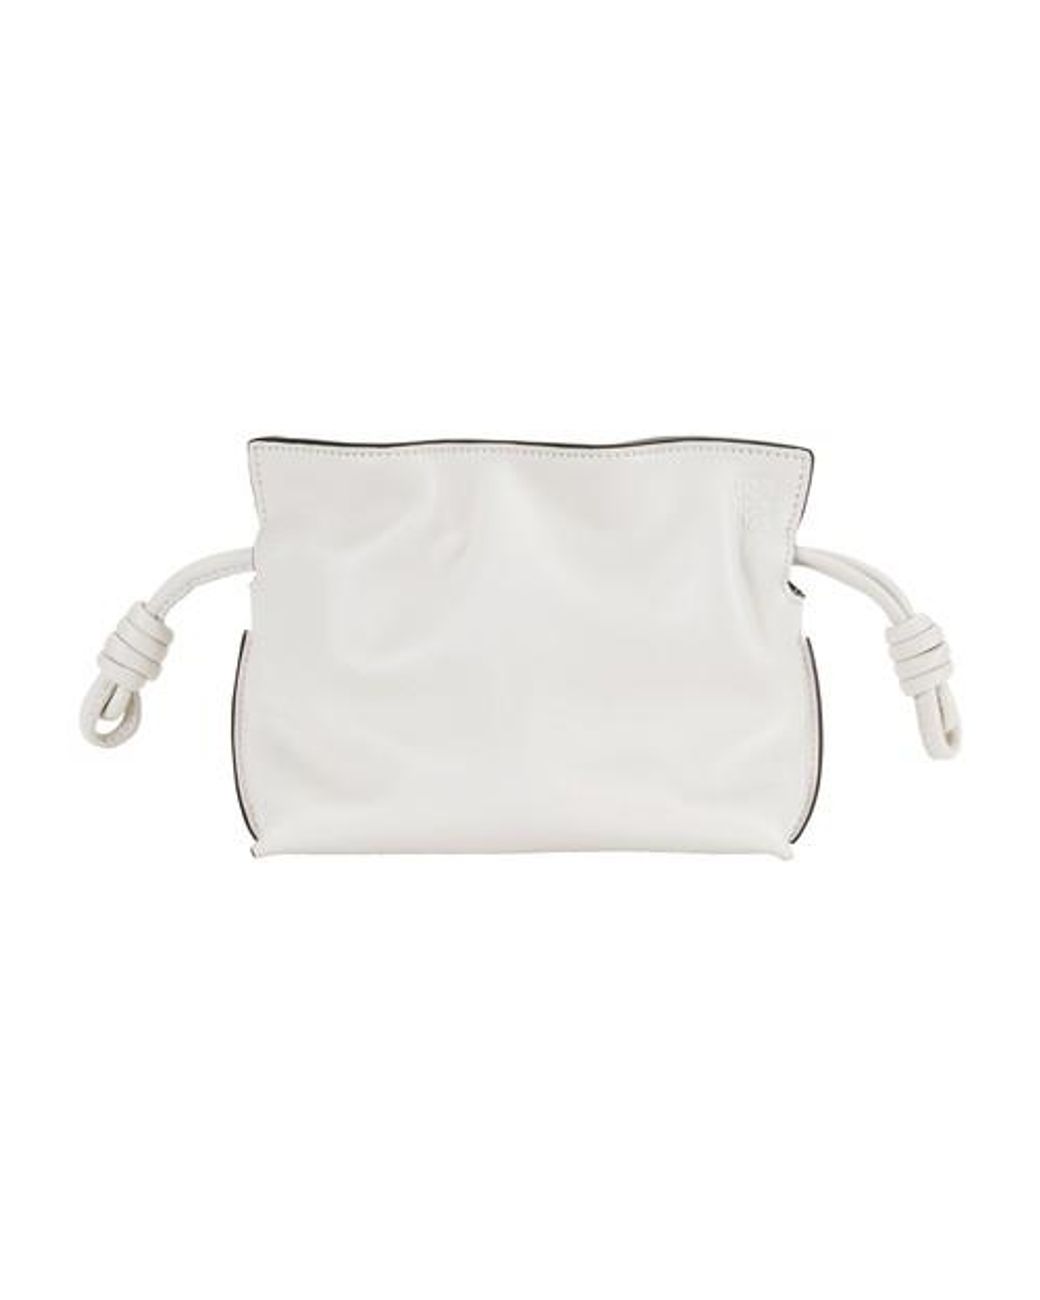 Loewe Flamenco Clutch Nano Bag in Soft White